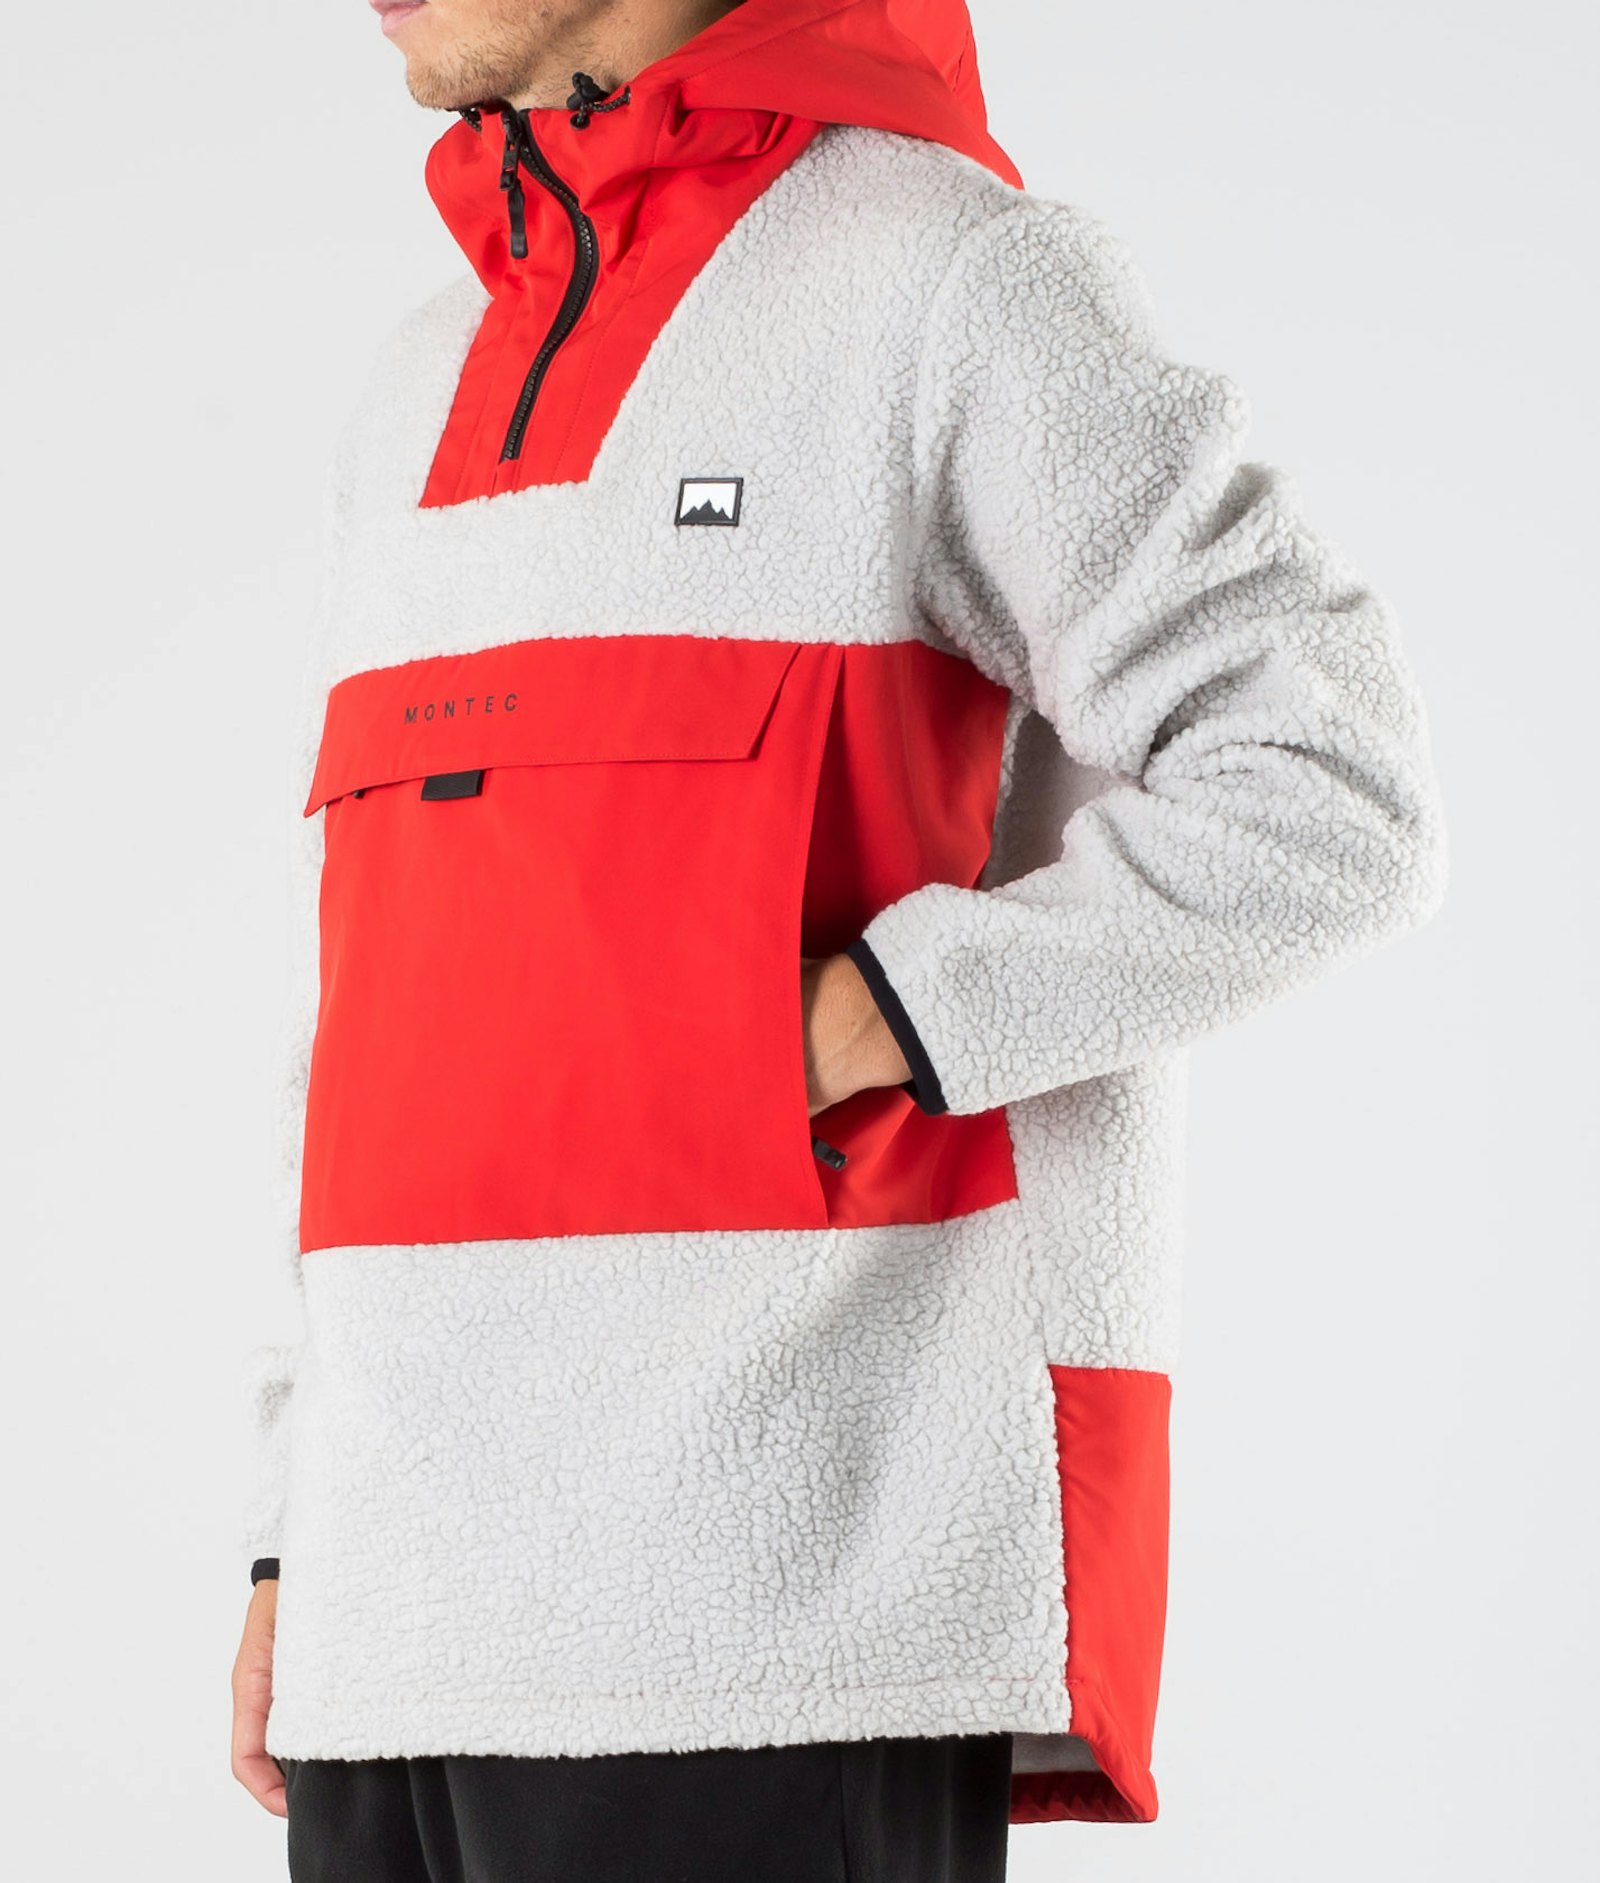 Lima 2020 Bluza Polarowa Mężczyźni Red/Light Grey